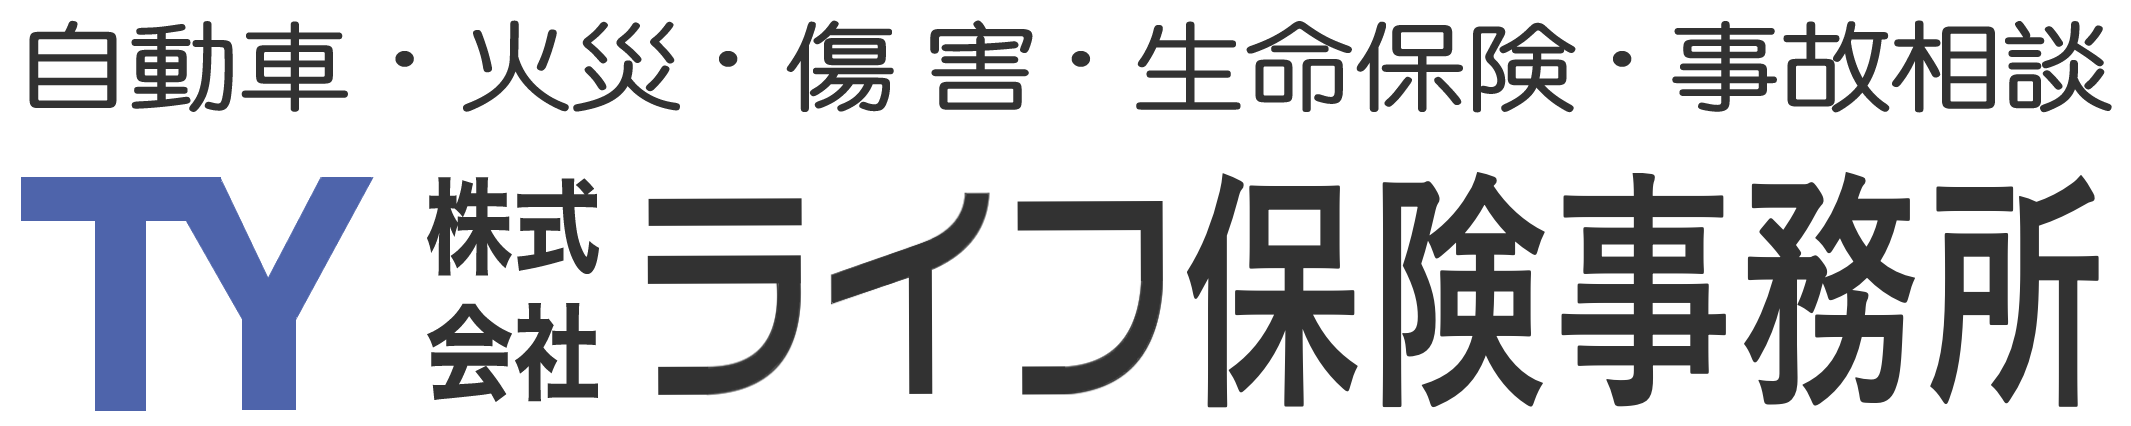 株式会社ライフ保険ロゴ